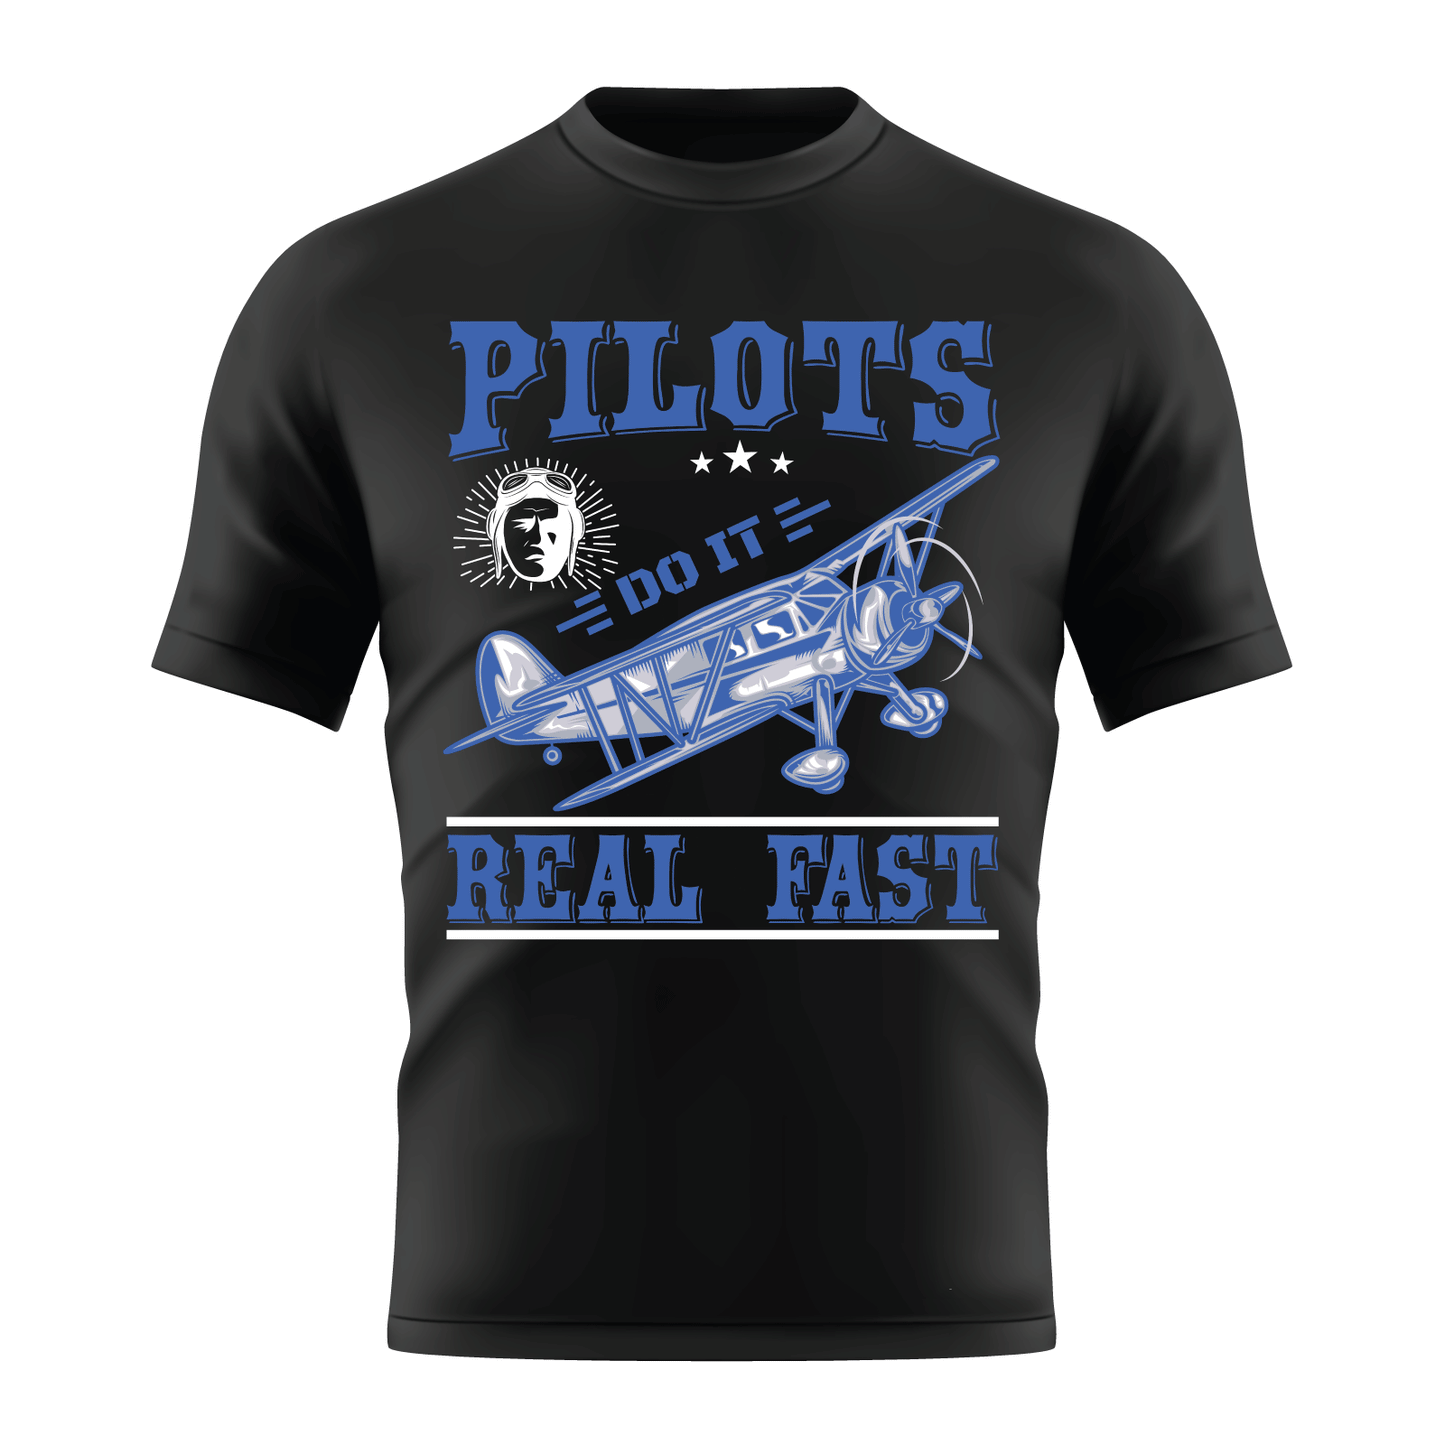 Pilots do it Fast